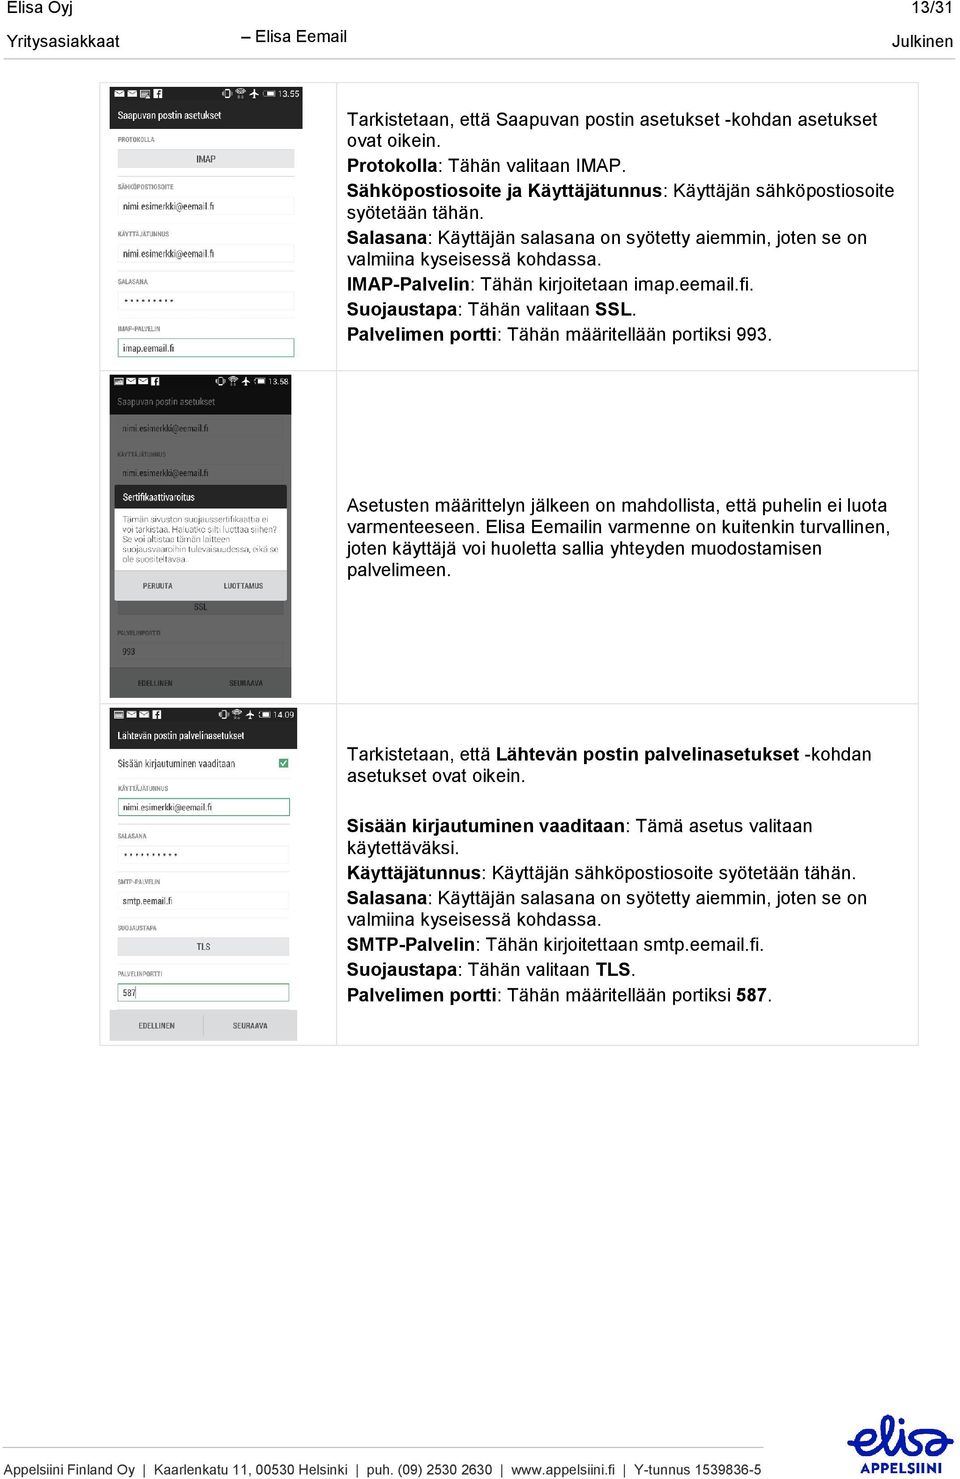 IMAP-Palvelin: Tähän kirjoitetaan imap.eemail.fi. Suojaustapa: Tähän valitaan SSL. Palvelimen portti: Tähän määritellään portiksi 993.